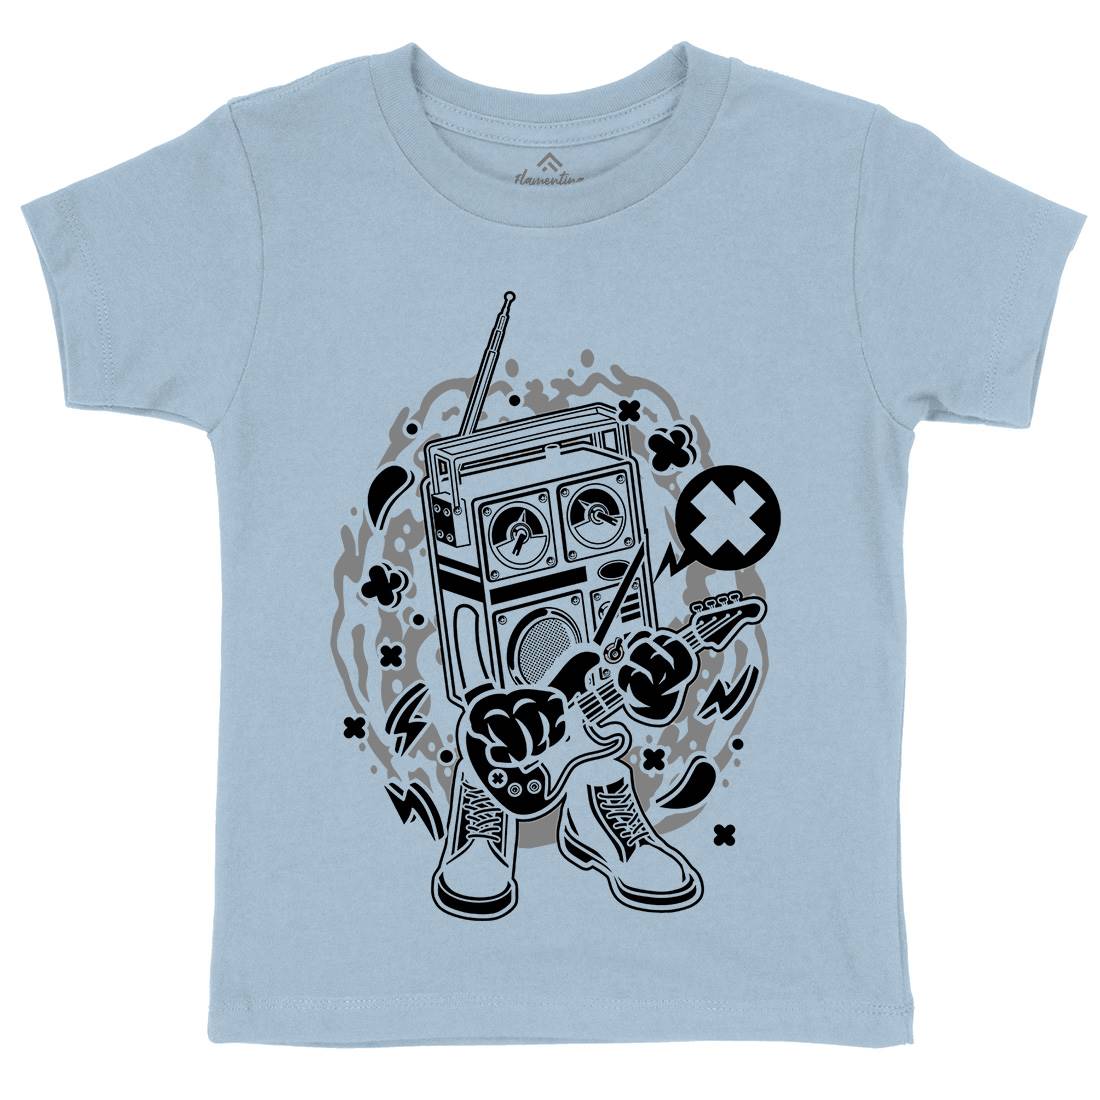 Retro Radio Rocker Kids Organic Crew Neck T-Shirt Music C203